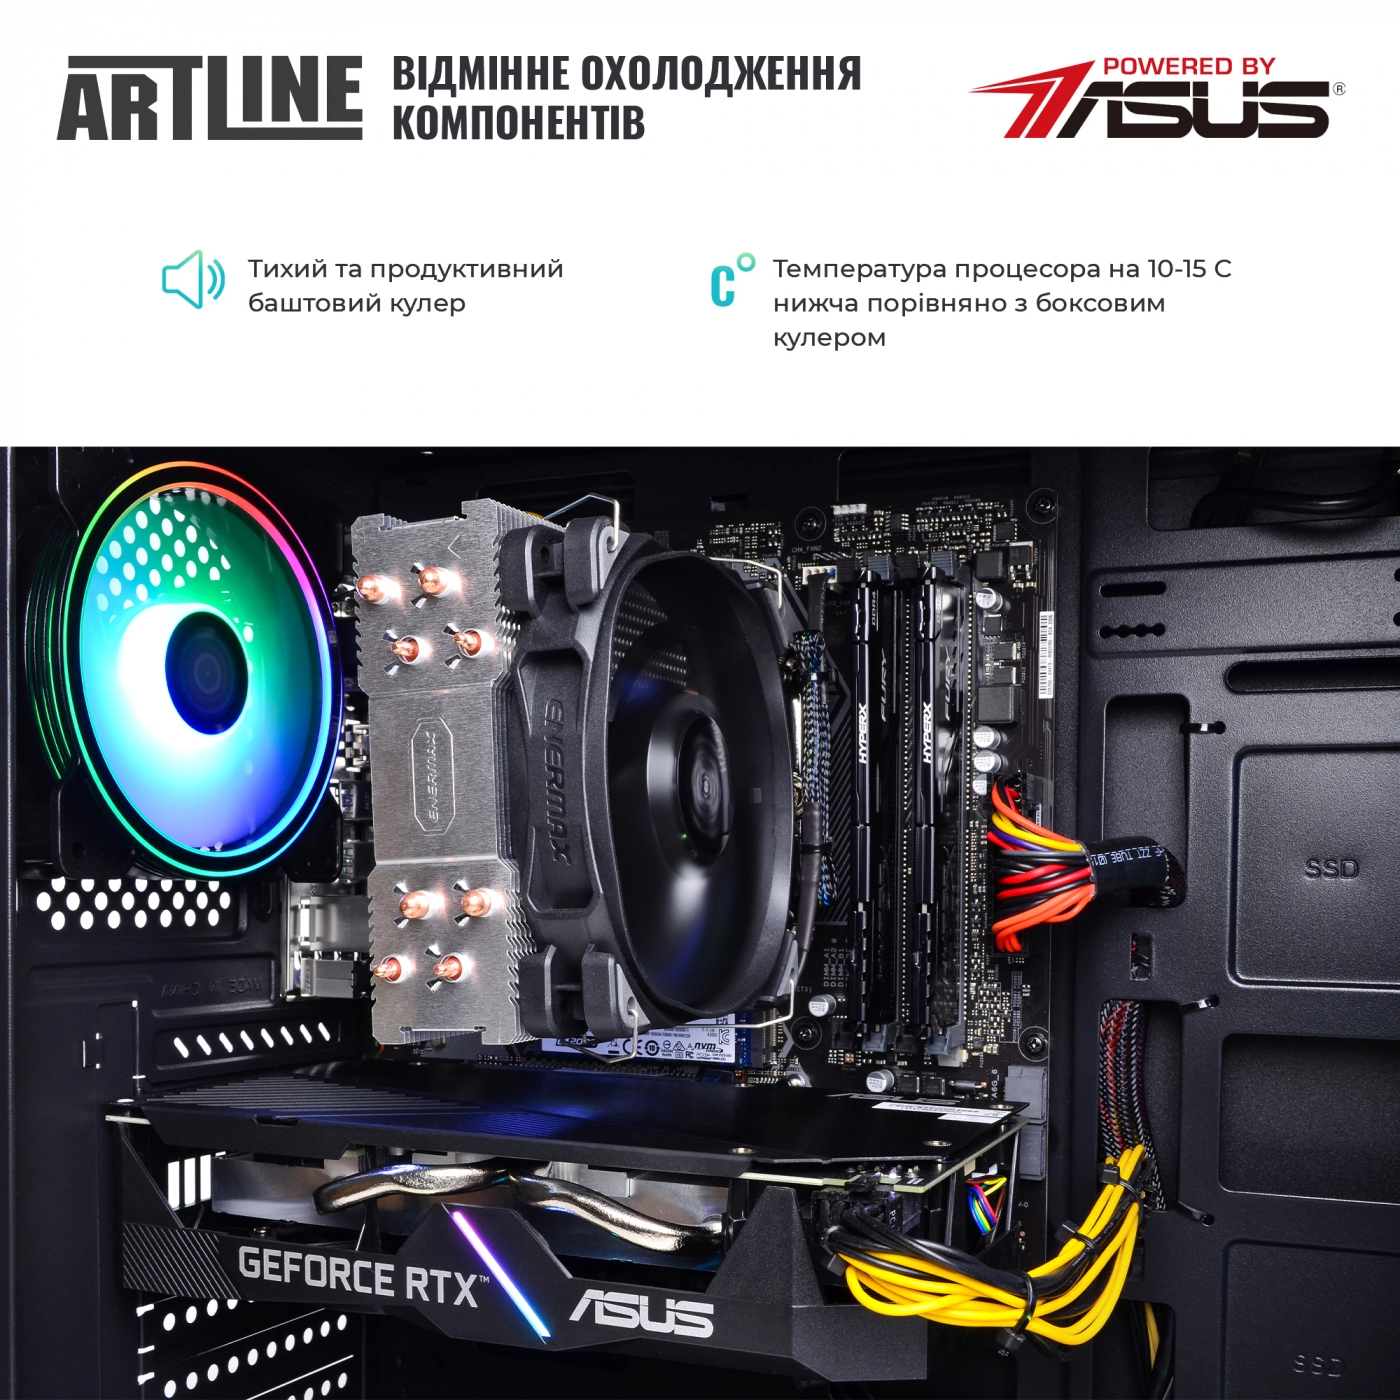 Купить Компьютер ARTLINE Gaming X83v07 - фото 7